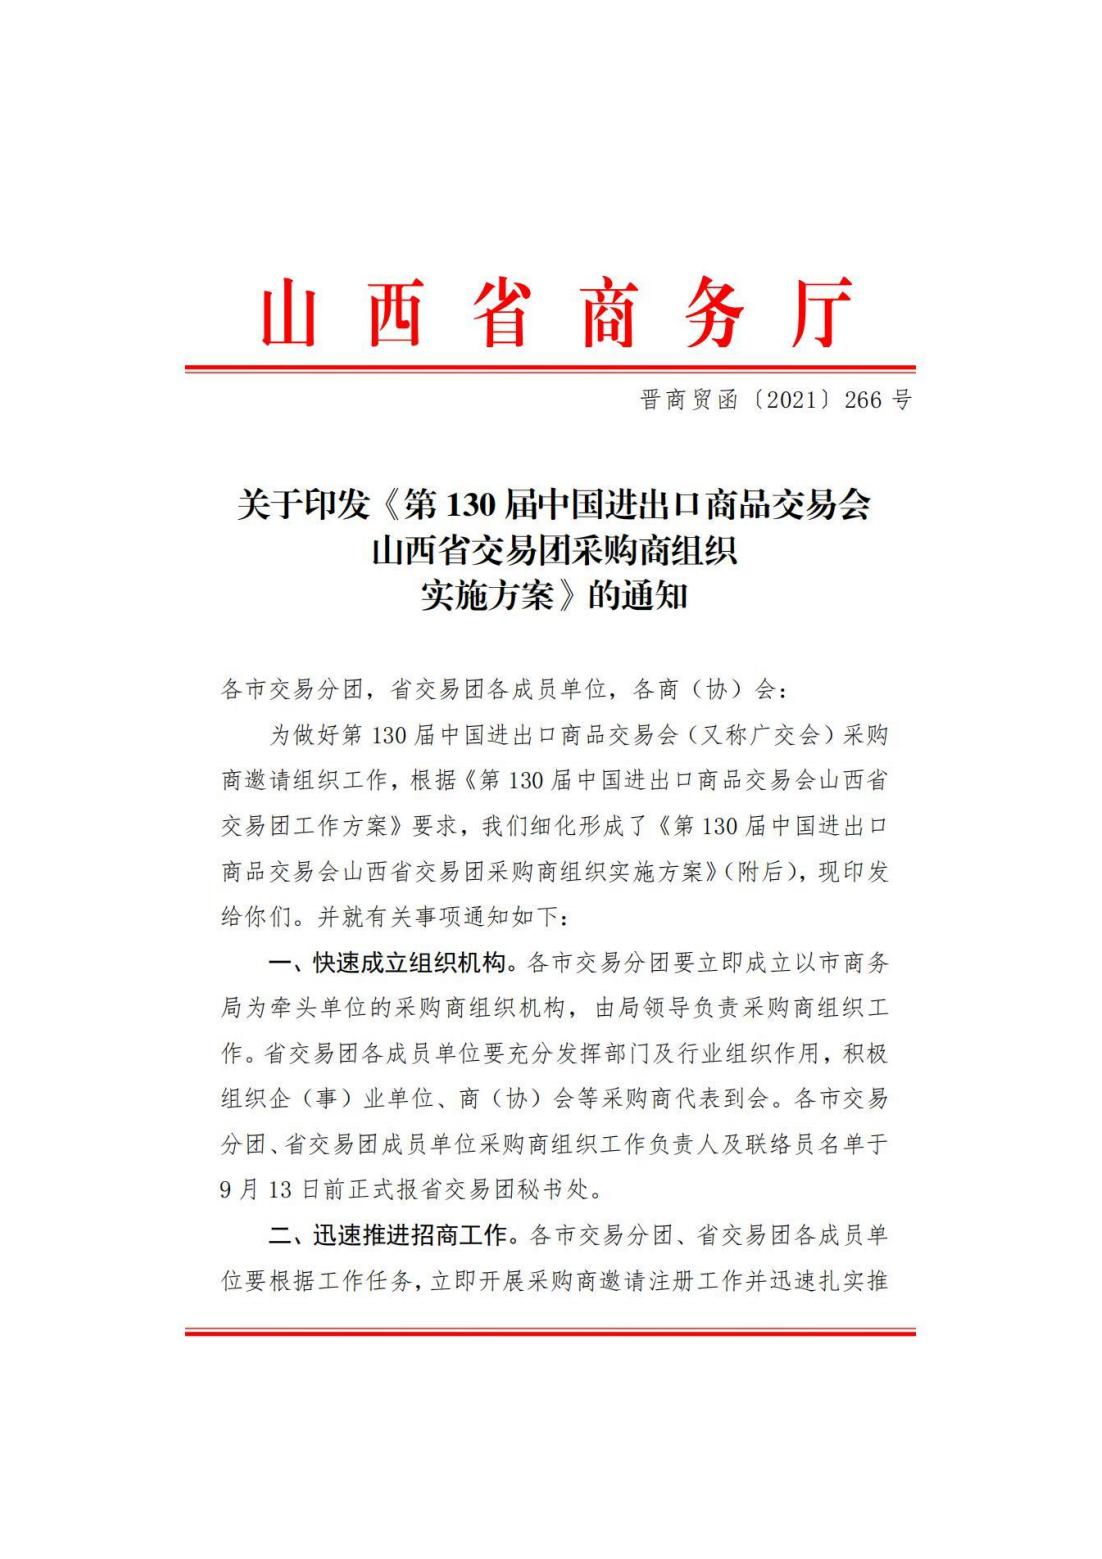 关于转发商务厅《第 130 届中国进出口商品交易会山西省交易团采购商组织实施方案》的通知(图2)